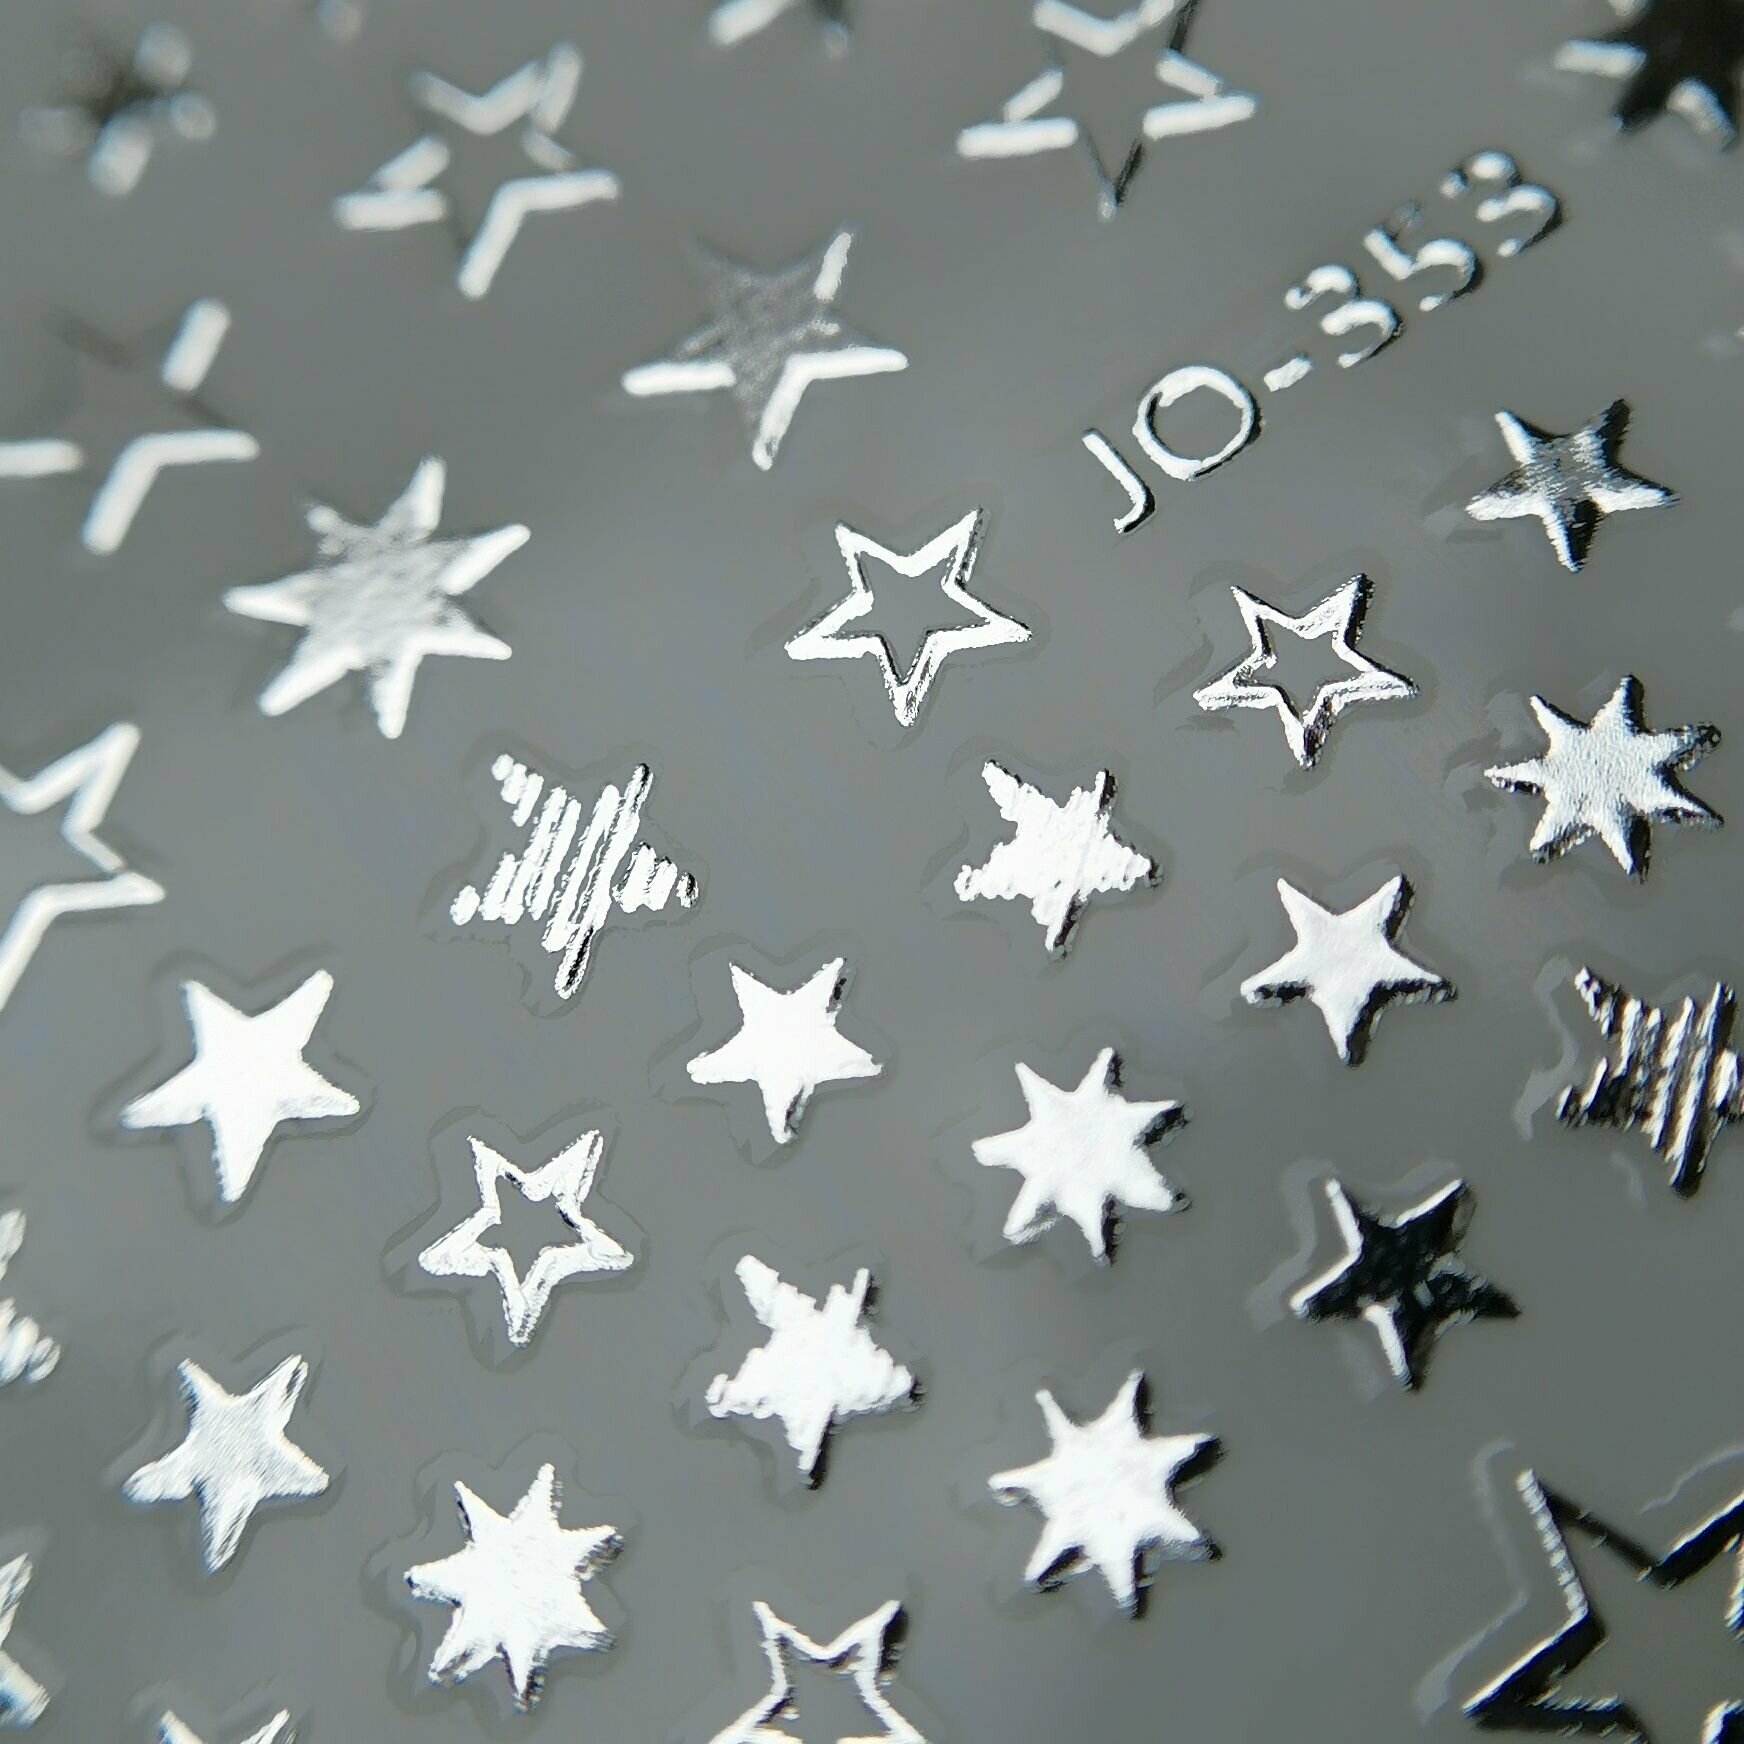 AS Artstudio 3D cтикеры самоклеящиеся для ногтей Звезды серебристый